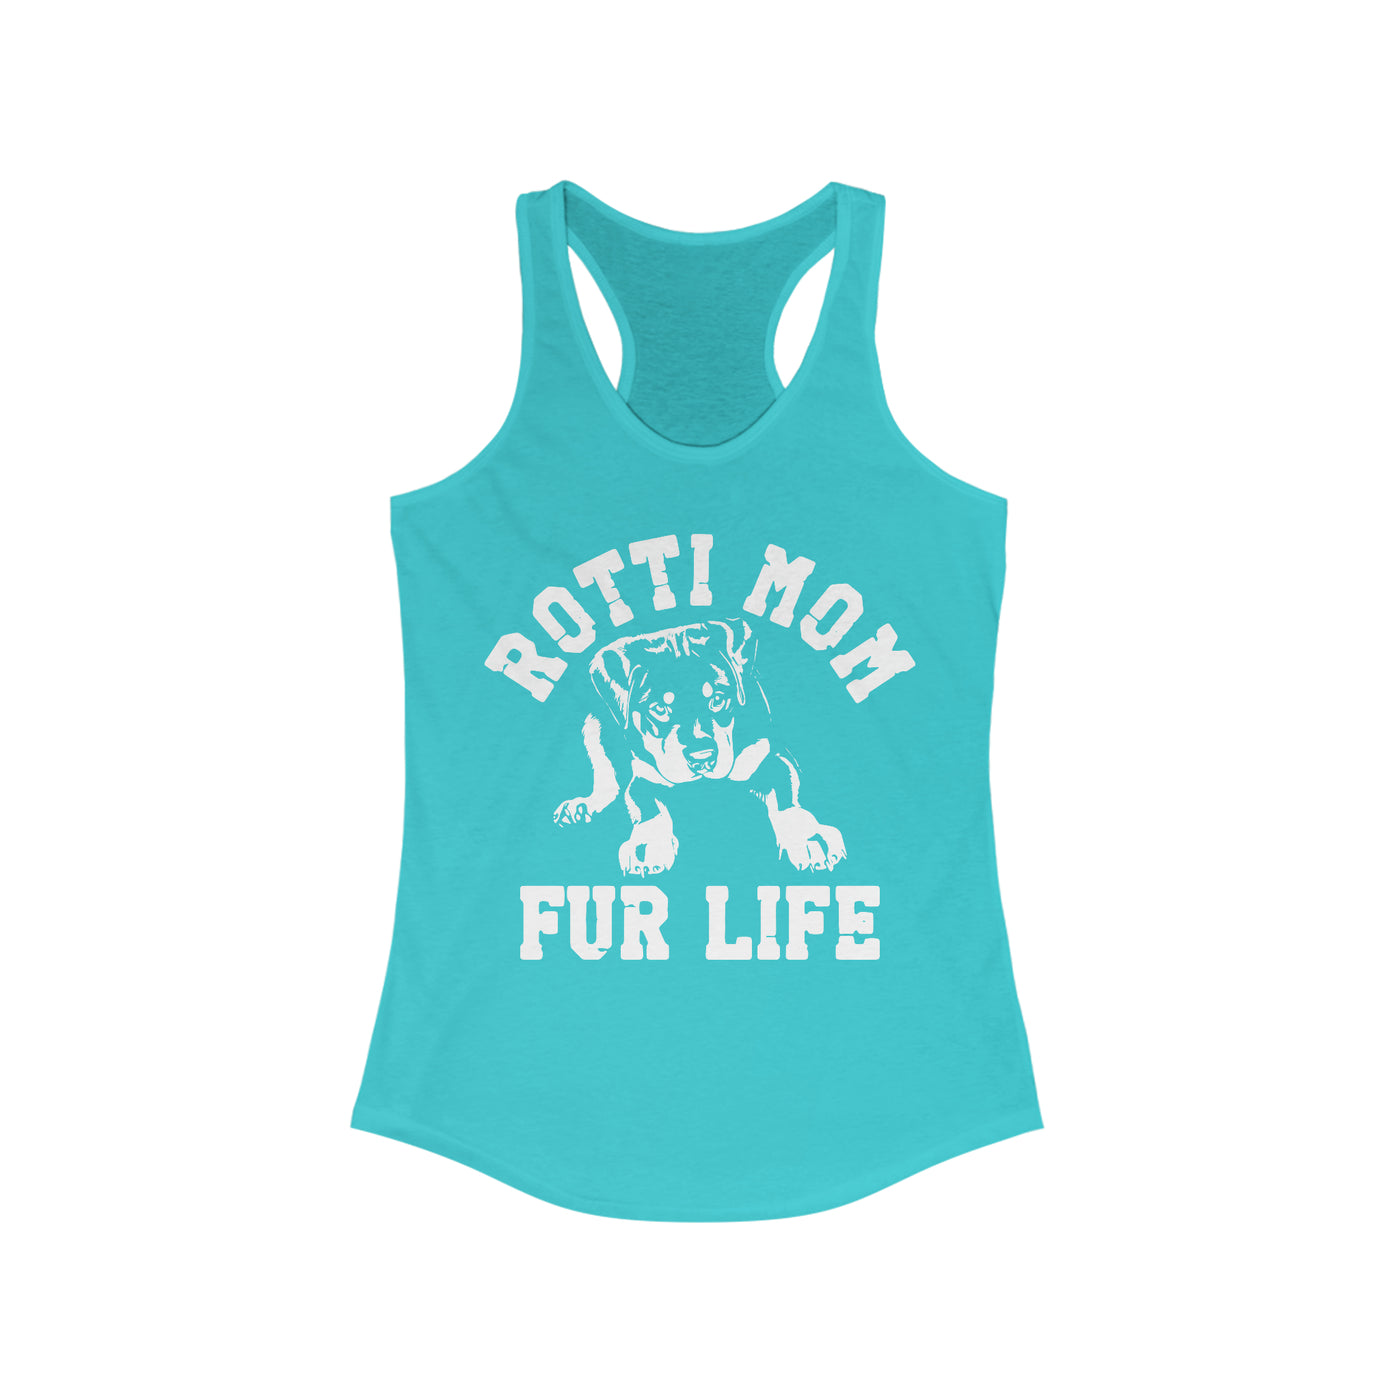 Rotti Mom Fur Life Tank Top